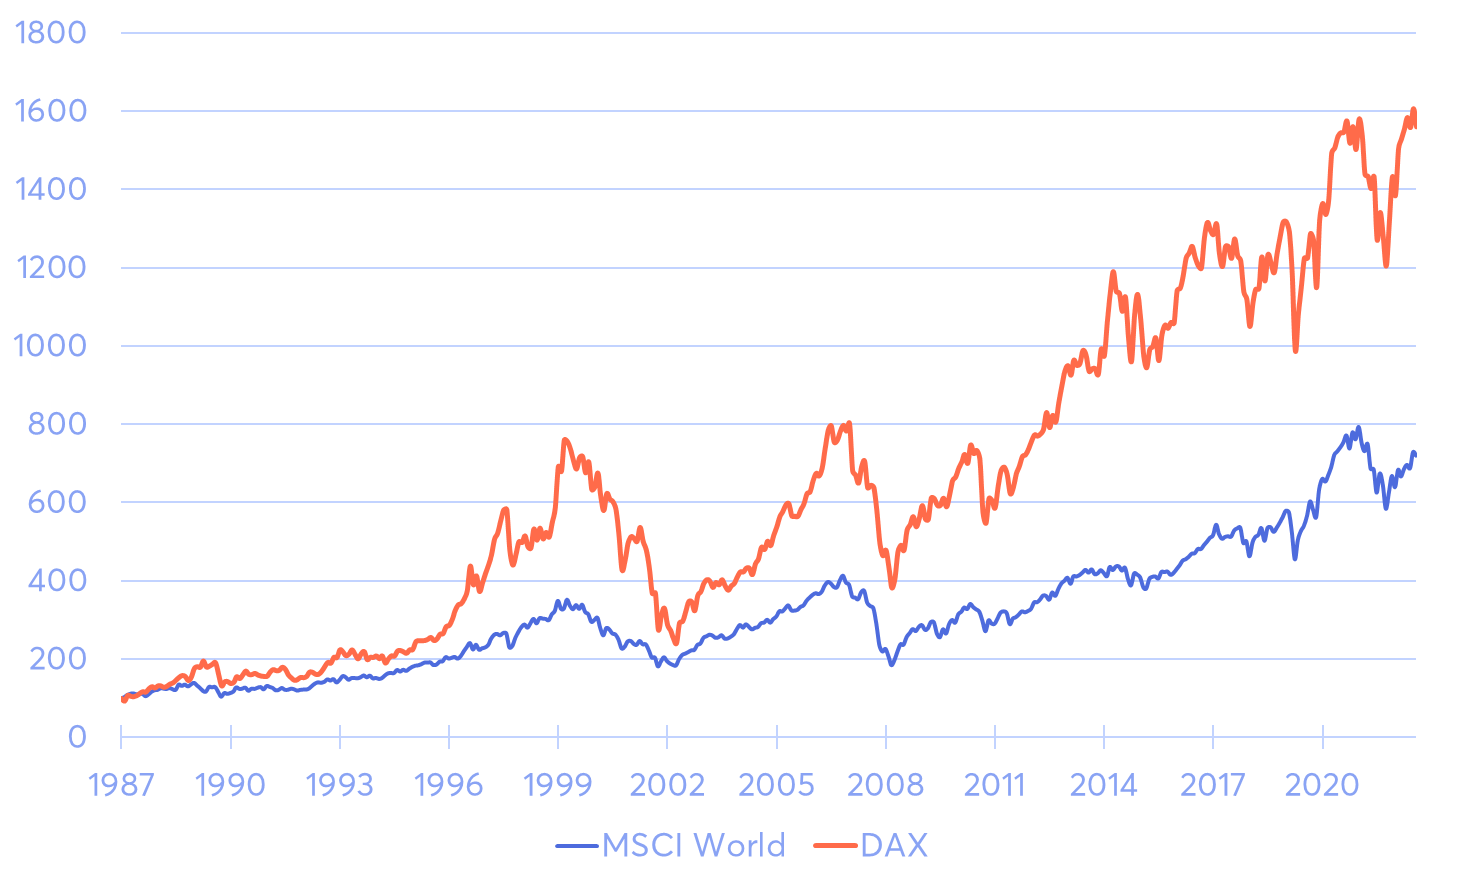 DAX vs. MSCI World